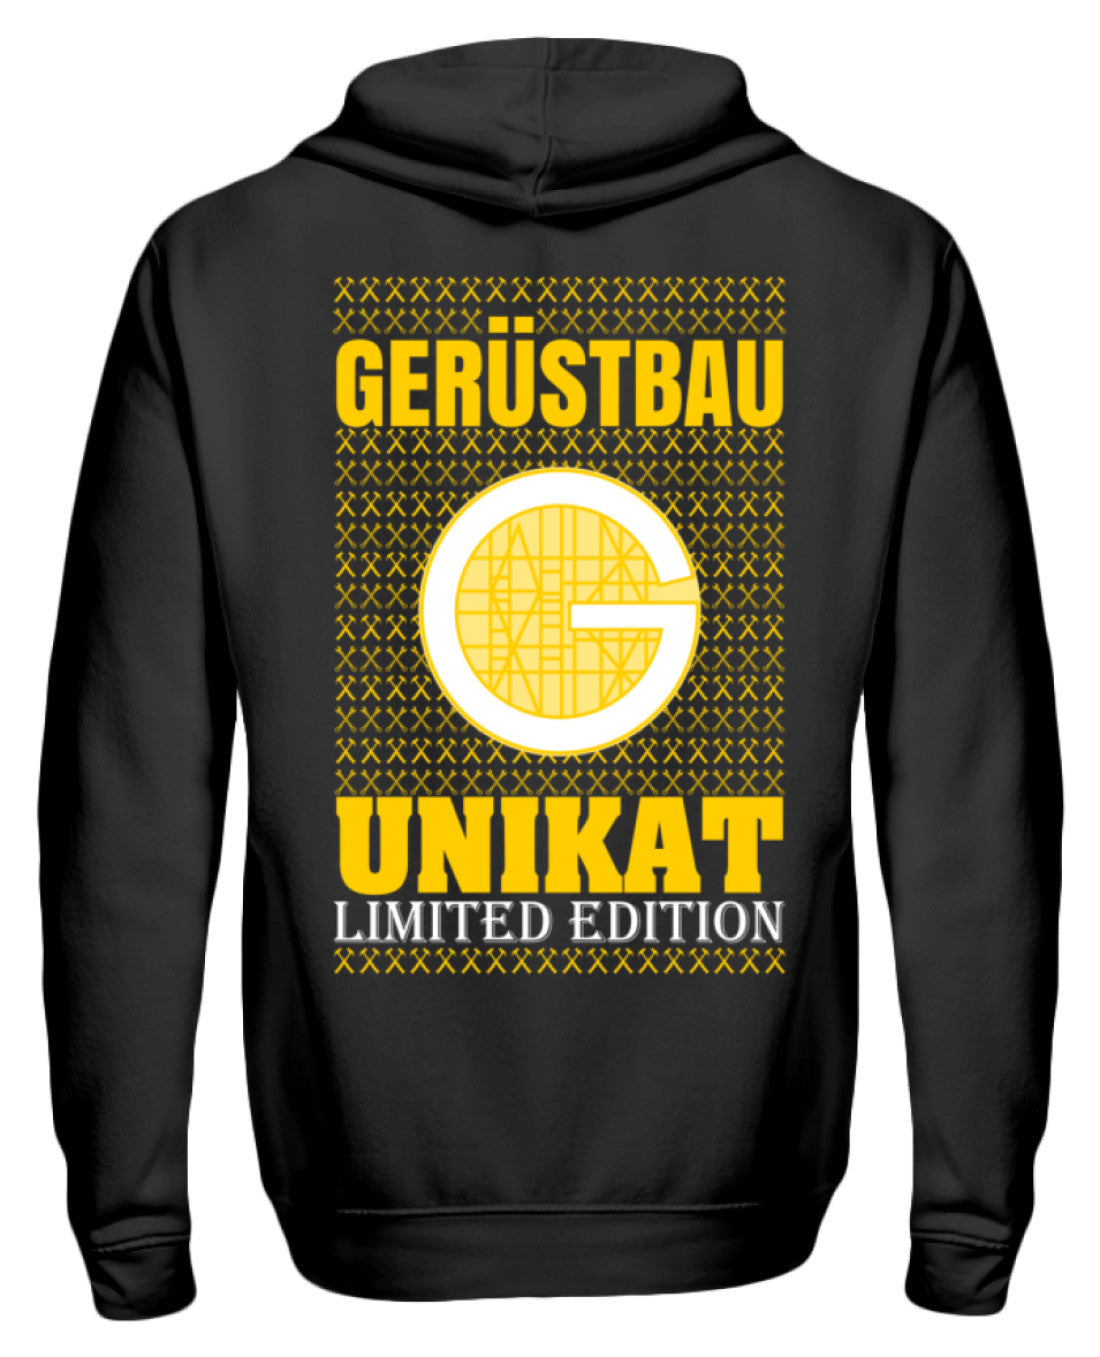 Gerüstbauer / Limited Edition €44.95 Gerüstbauer - Shop >>